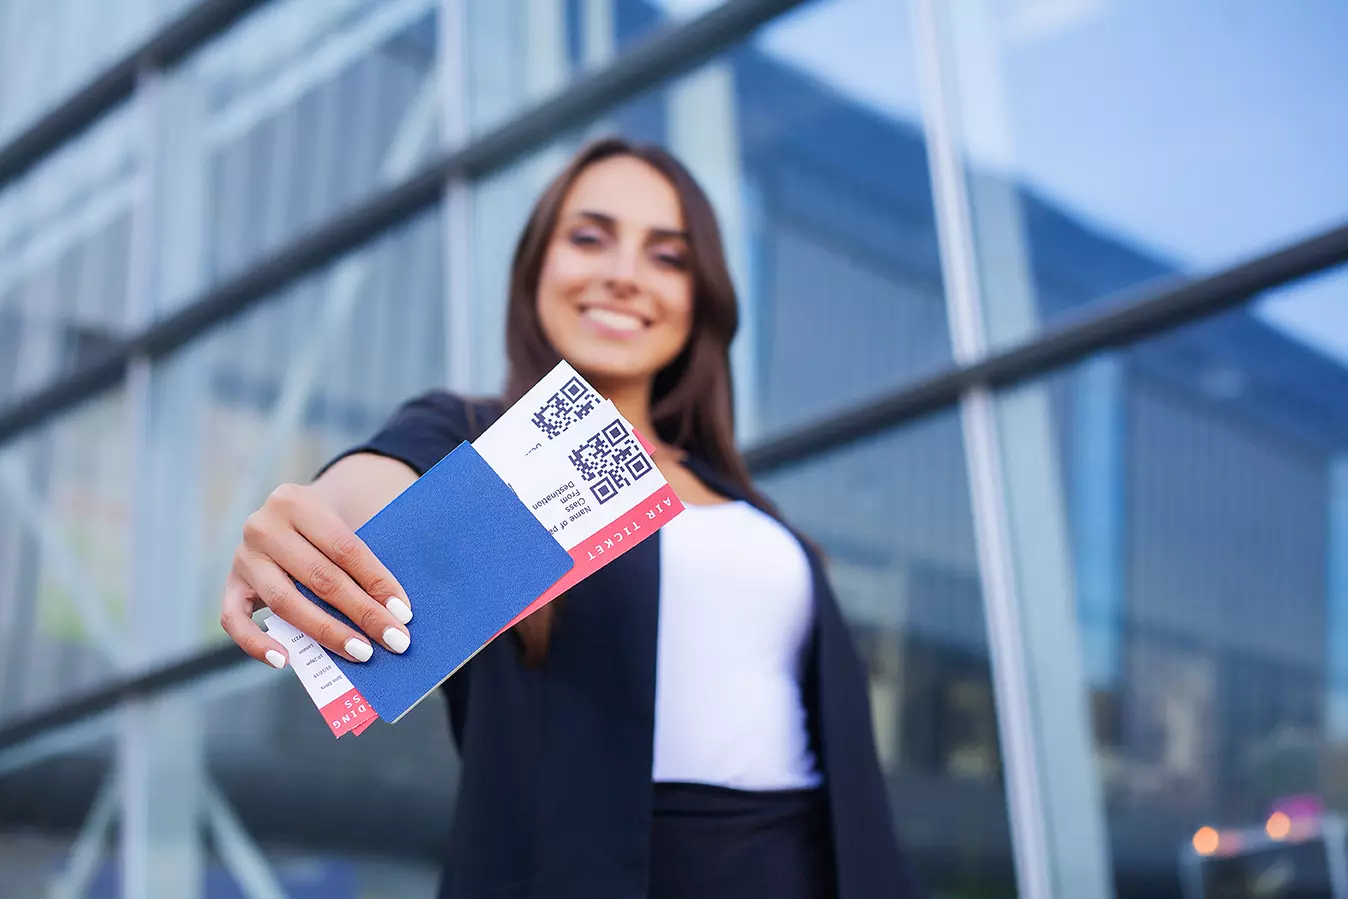 Mujer mostrando boletos de avión mostrando por qué no es recomendable publicar fotos de los boletos de avión.